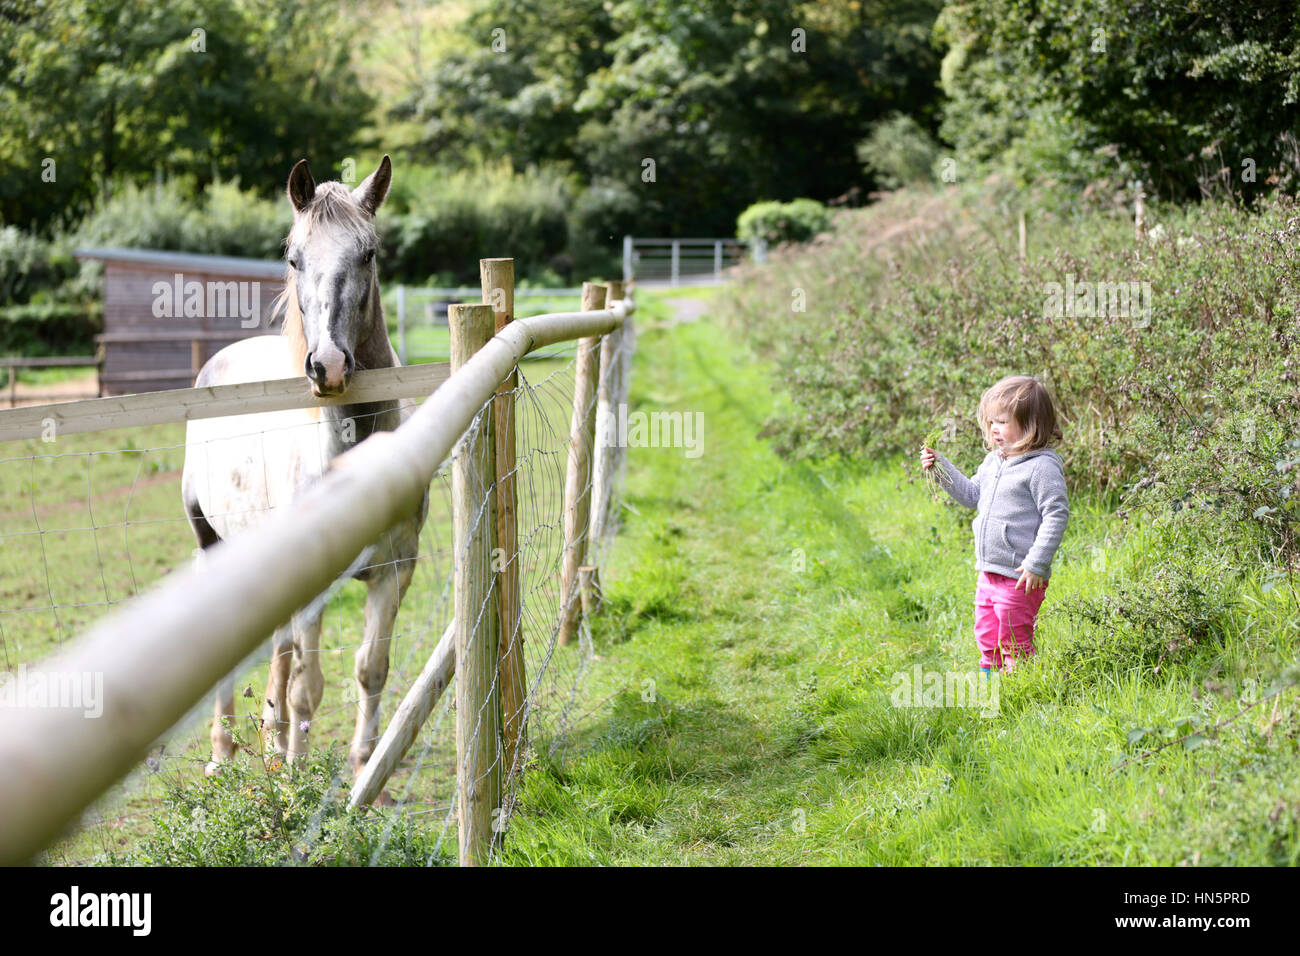 Ein junges Mädchen hält eine Handvoll Gras, ein Pferd in einem nahe gelegenen Gehäuse zu ernähren Stockfoto